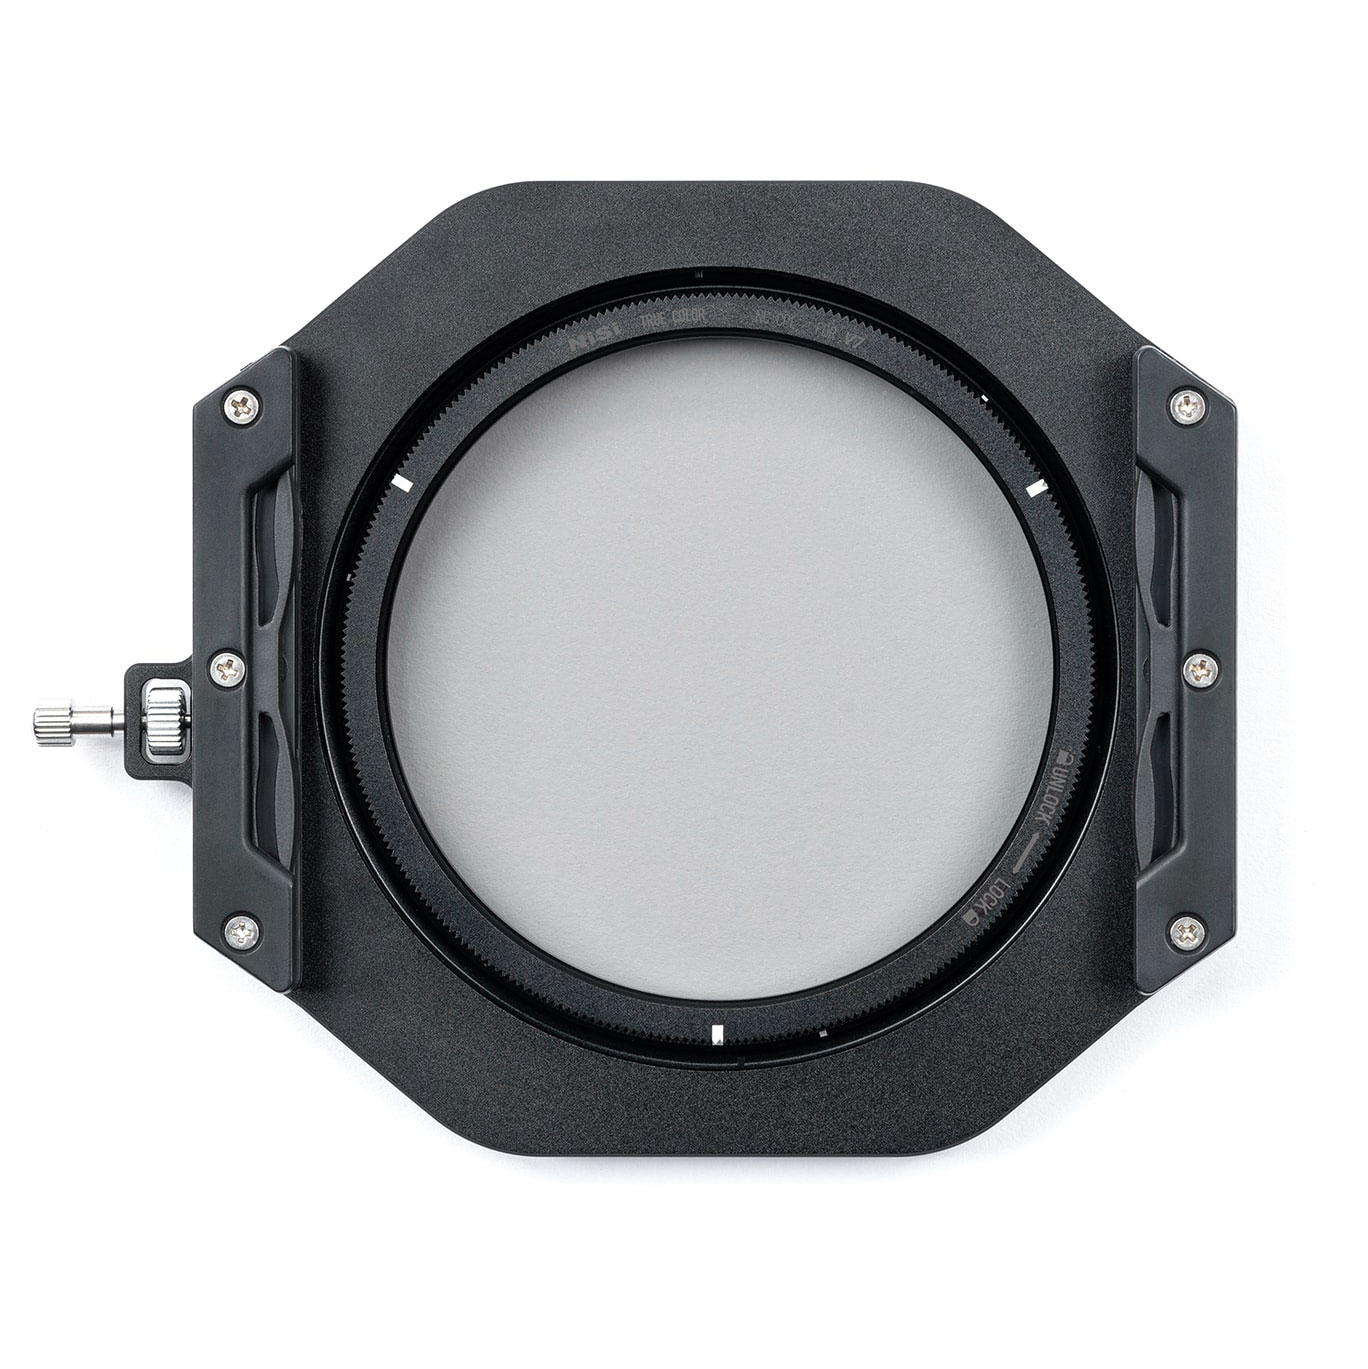 Grafiek Assert Mysterieus NEW NiSi 100mm V7 - True Colour NC Polariser - NiSi Filters UK-Lenslight